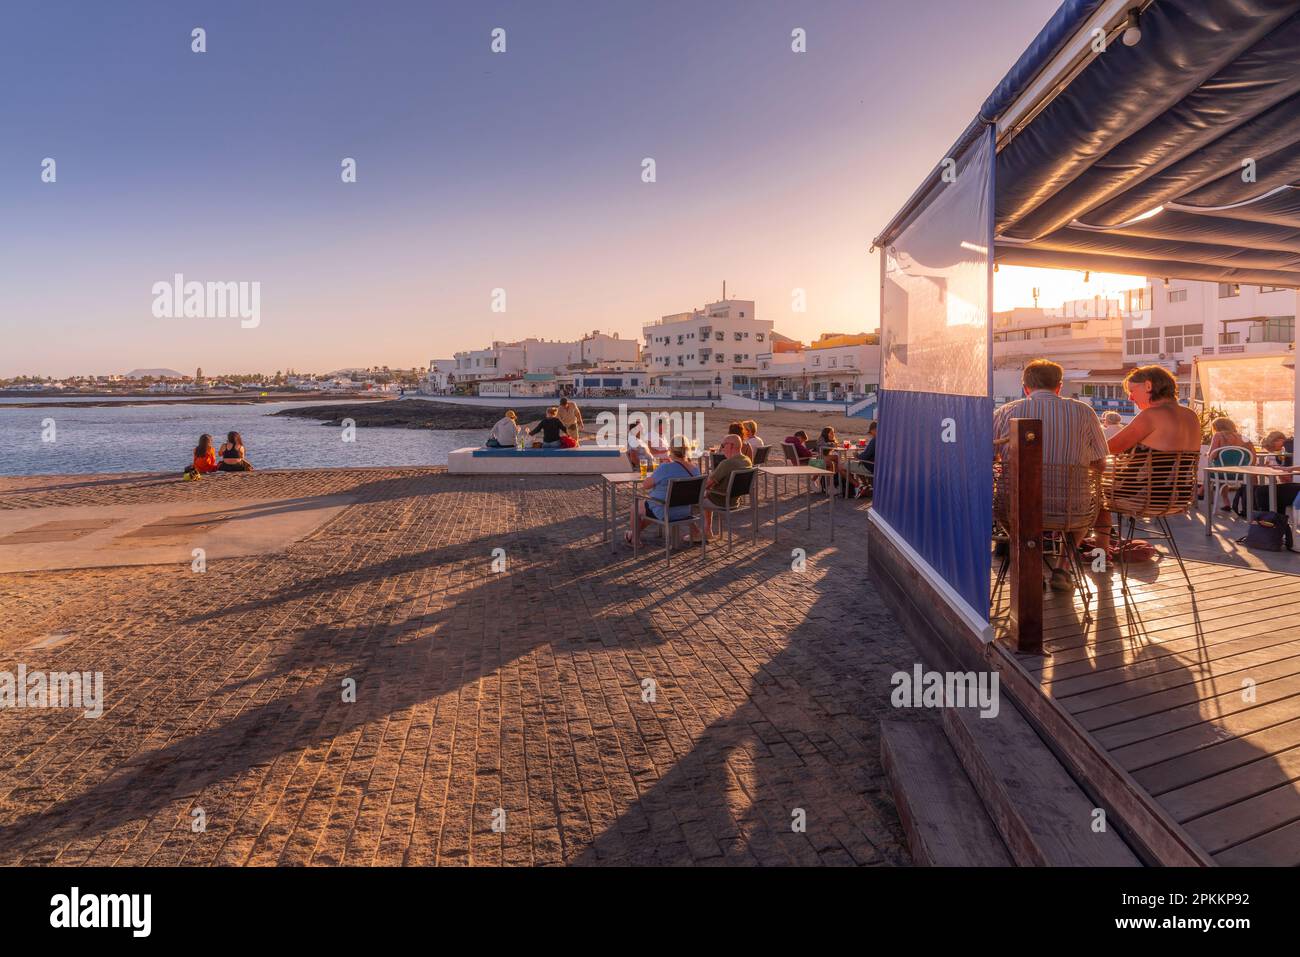 Blick auf den Strand und die Bars an einem sonnigen Tag, Corralejo, Fuerteventura, Kanarische Inseln, Spanien, Atlantik, Europa Stockfoto